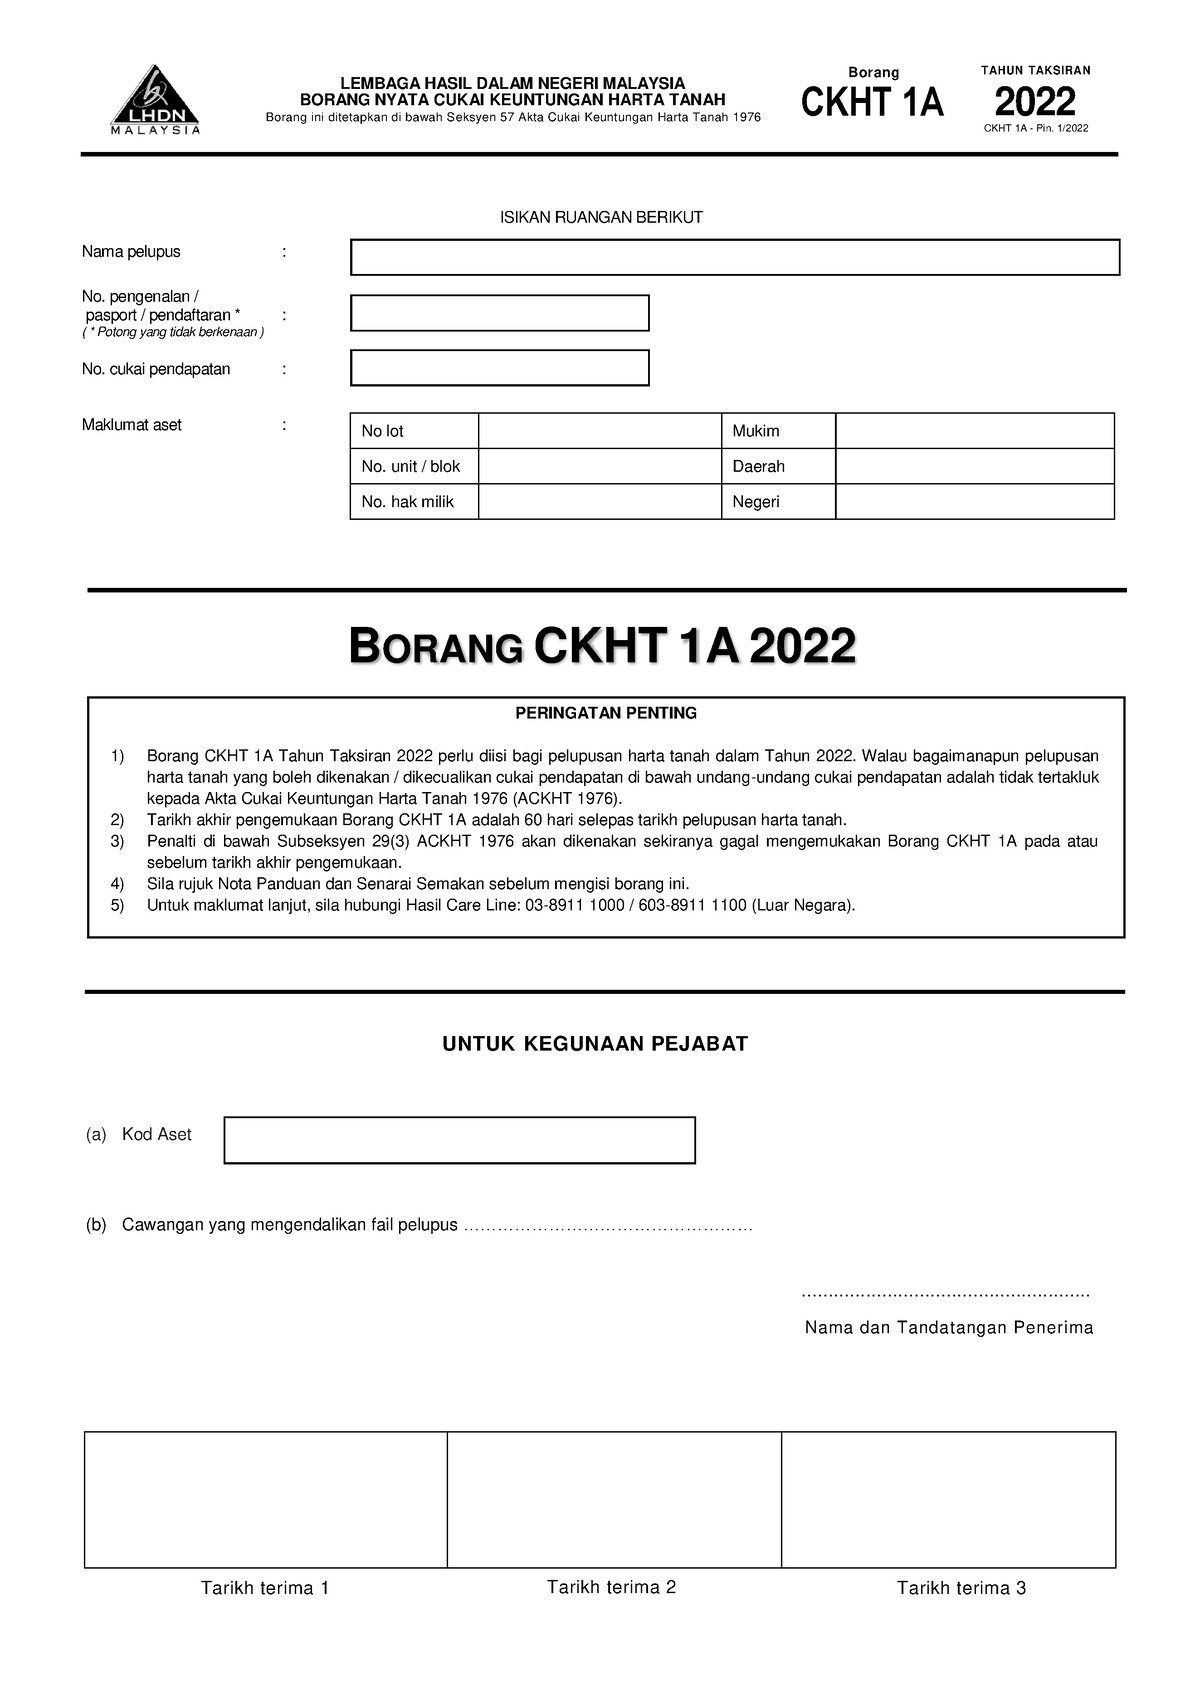 CKHT 1A Pin1 2022 Forms (a) Kod Aset (b) Cawangan yang